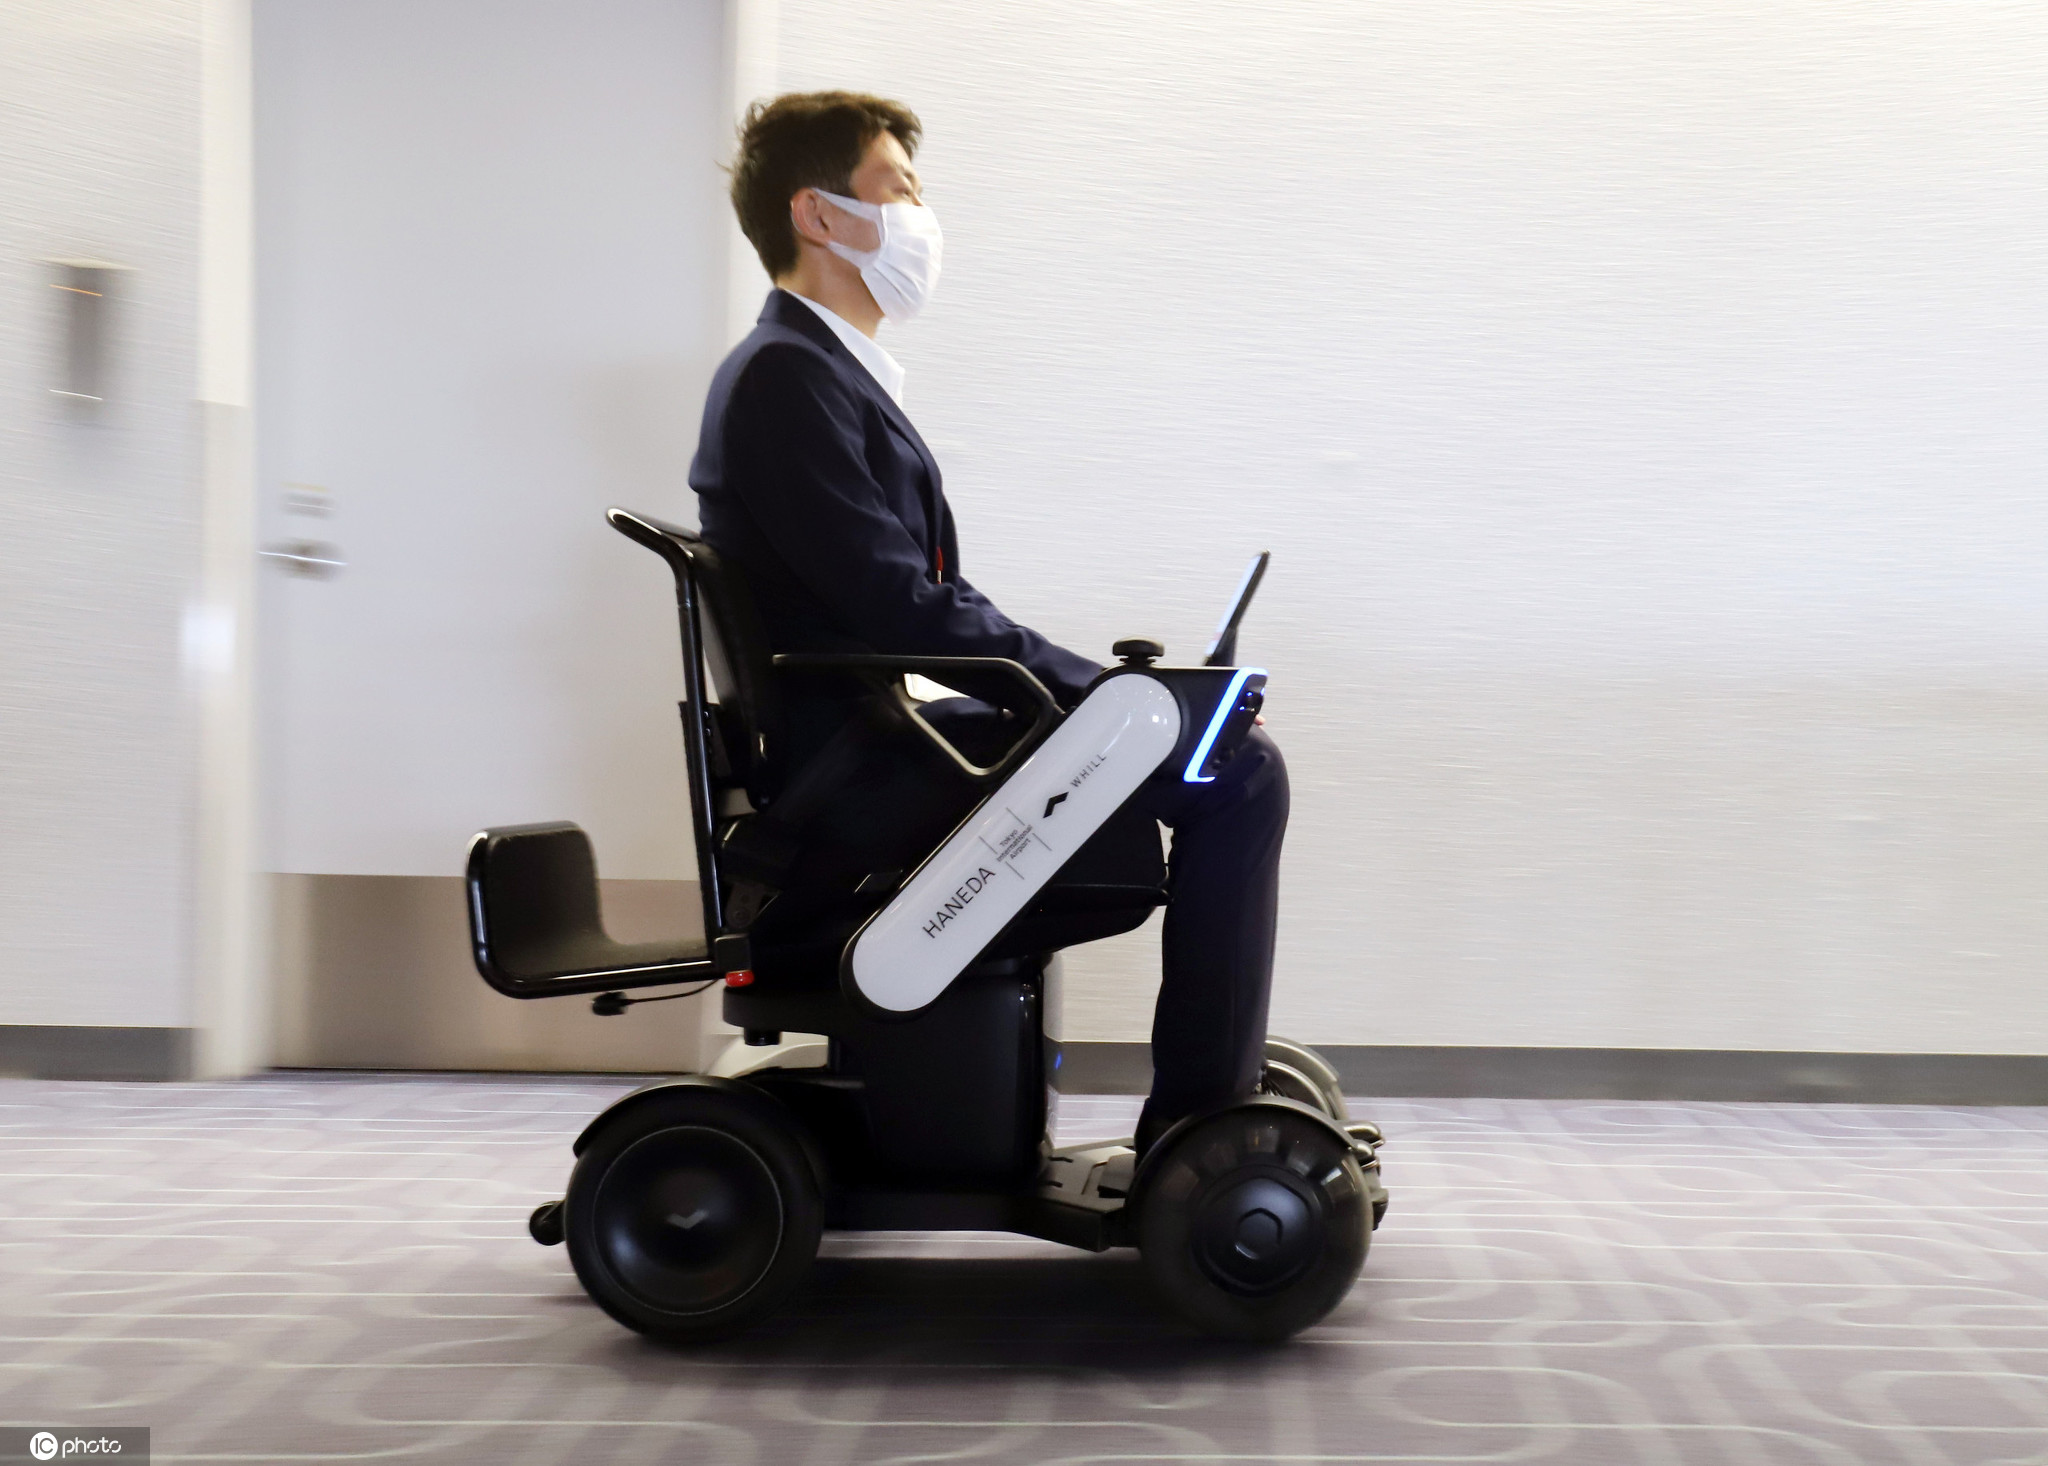 轻便电动轮椅中的典范-BAW01 - 知乎